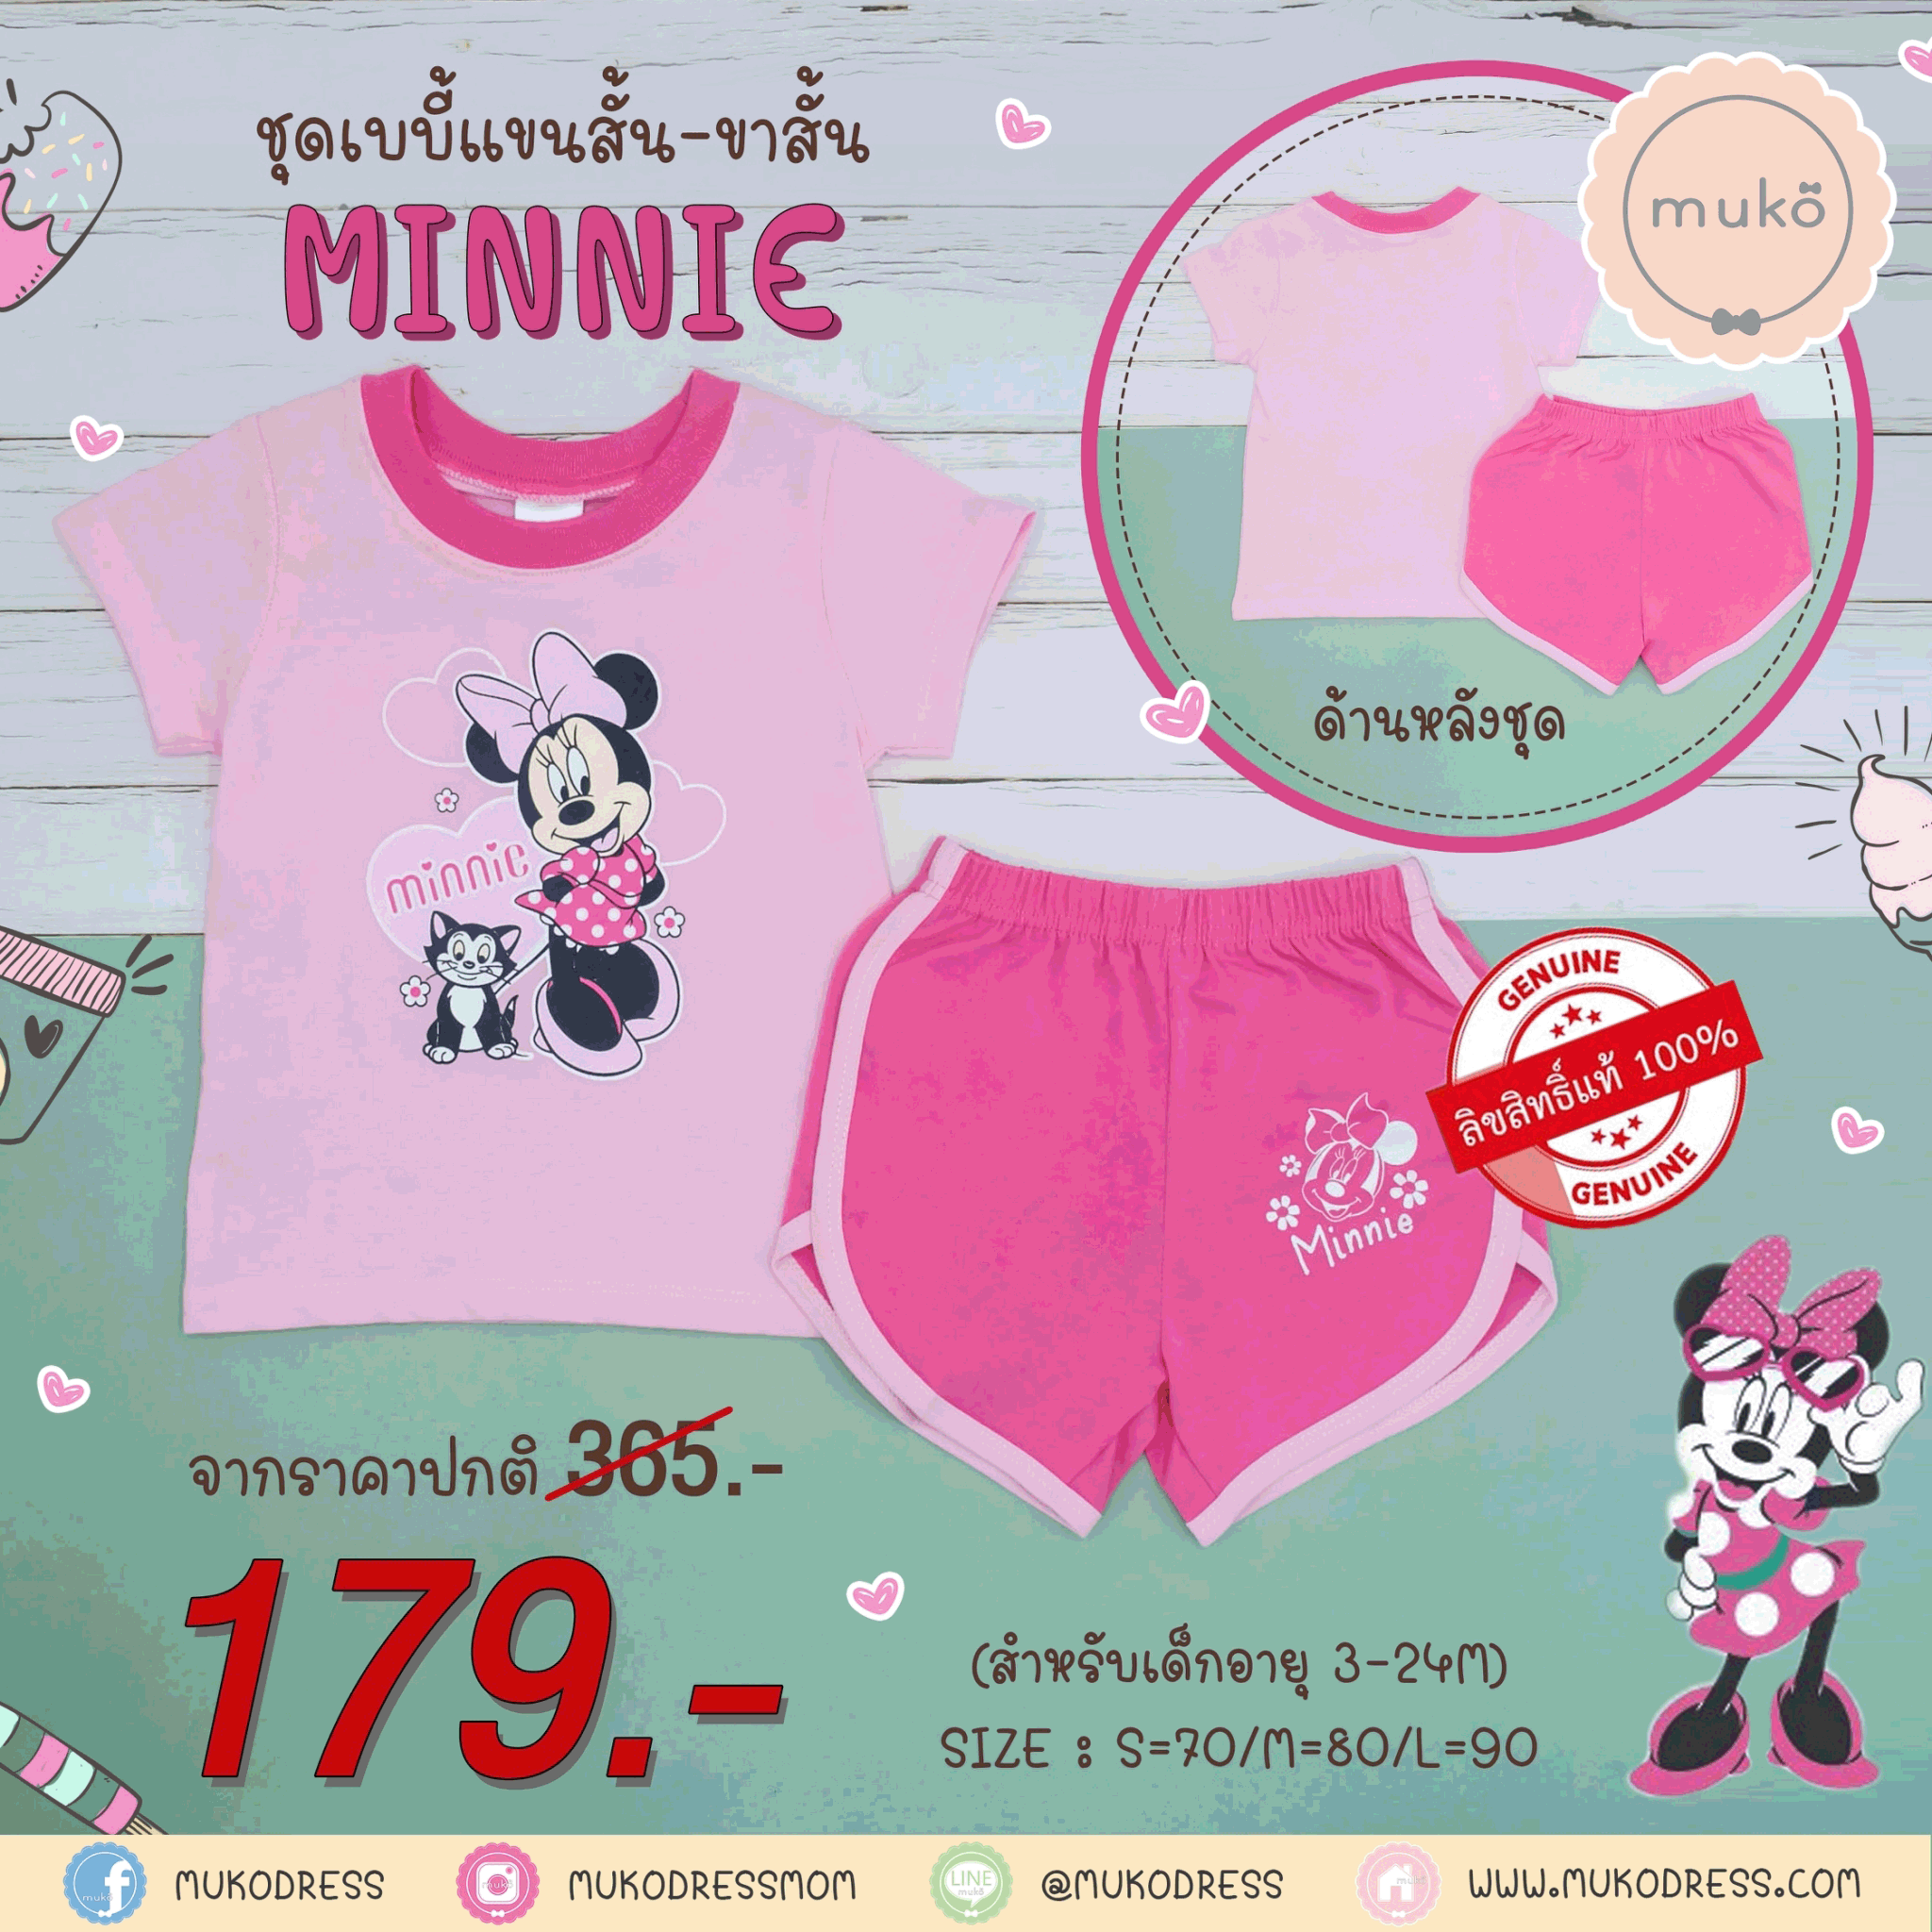 ชุดเบบี้ 3-6 เดือน แขนสั้น-ขาสั้น (S=70) DMK017-13-L-Pink S ลายมินนี่ เมาส์ Minnie Mouse